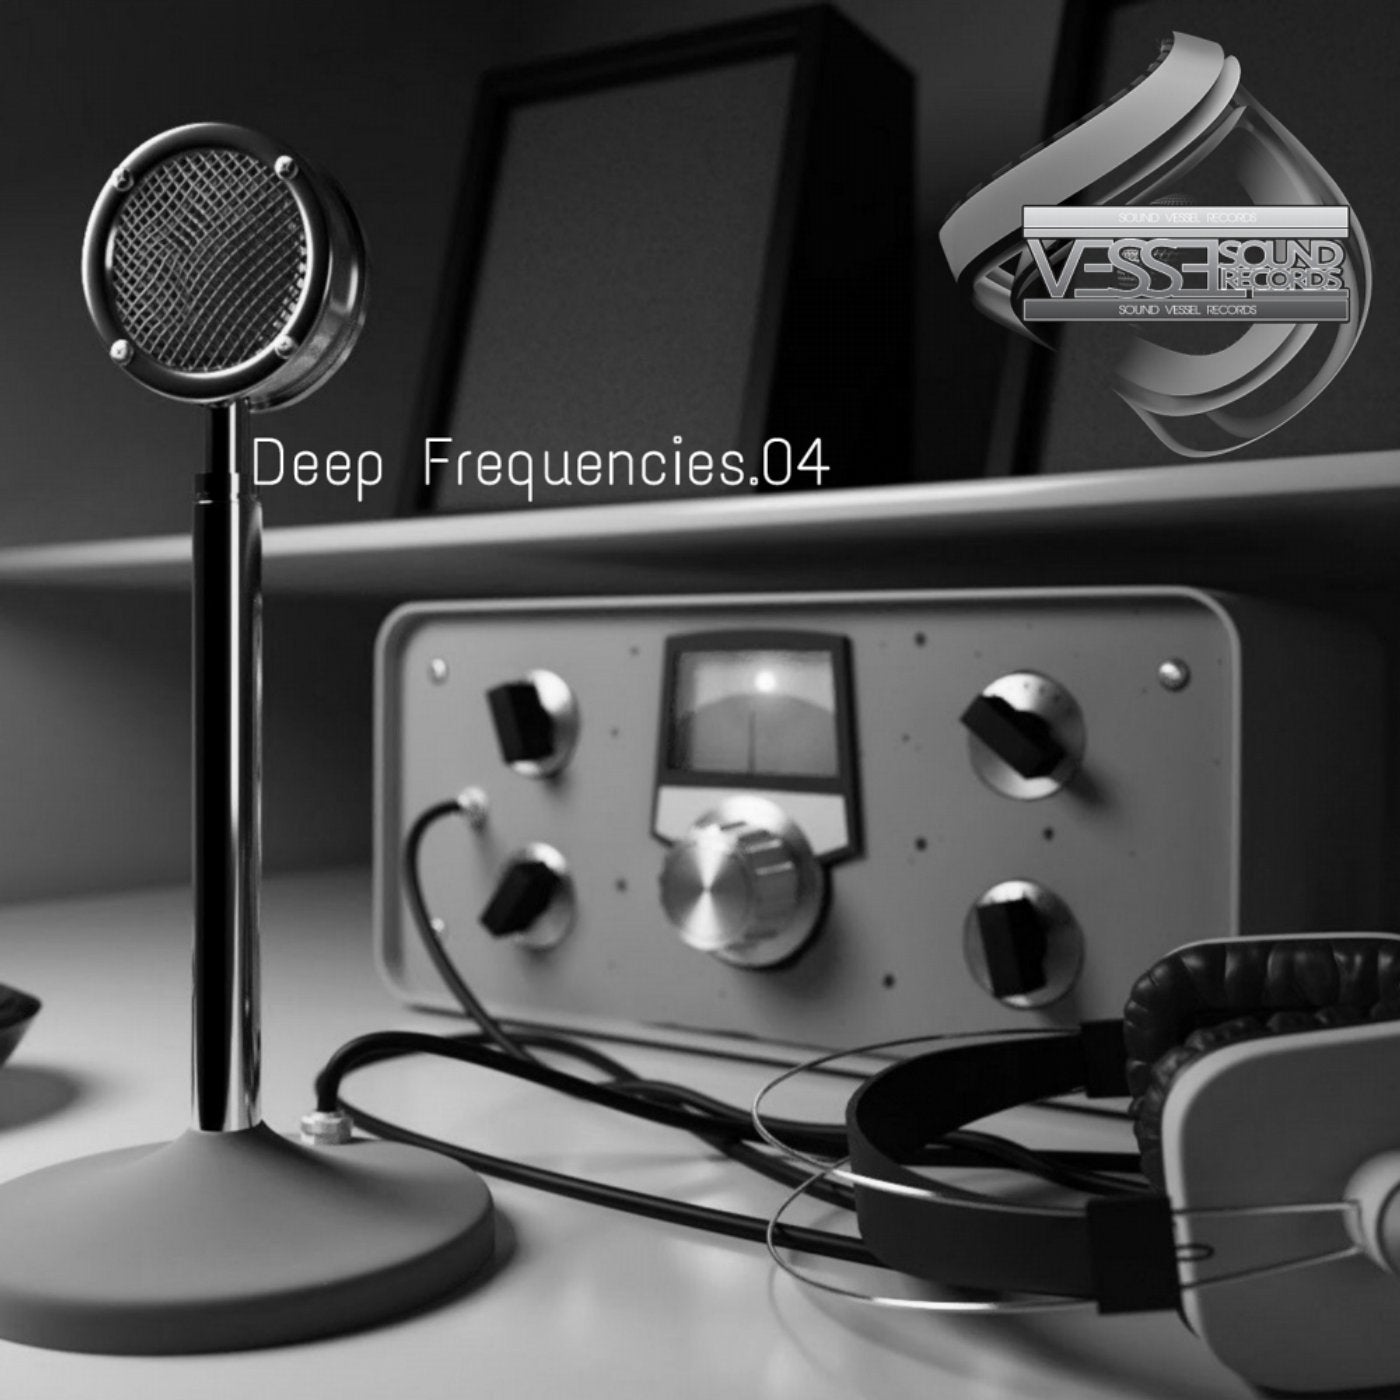 Deep Frequencies.04